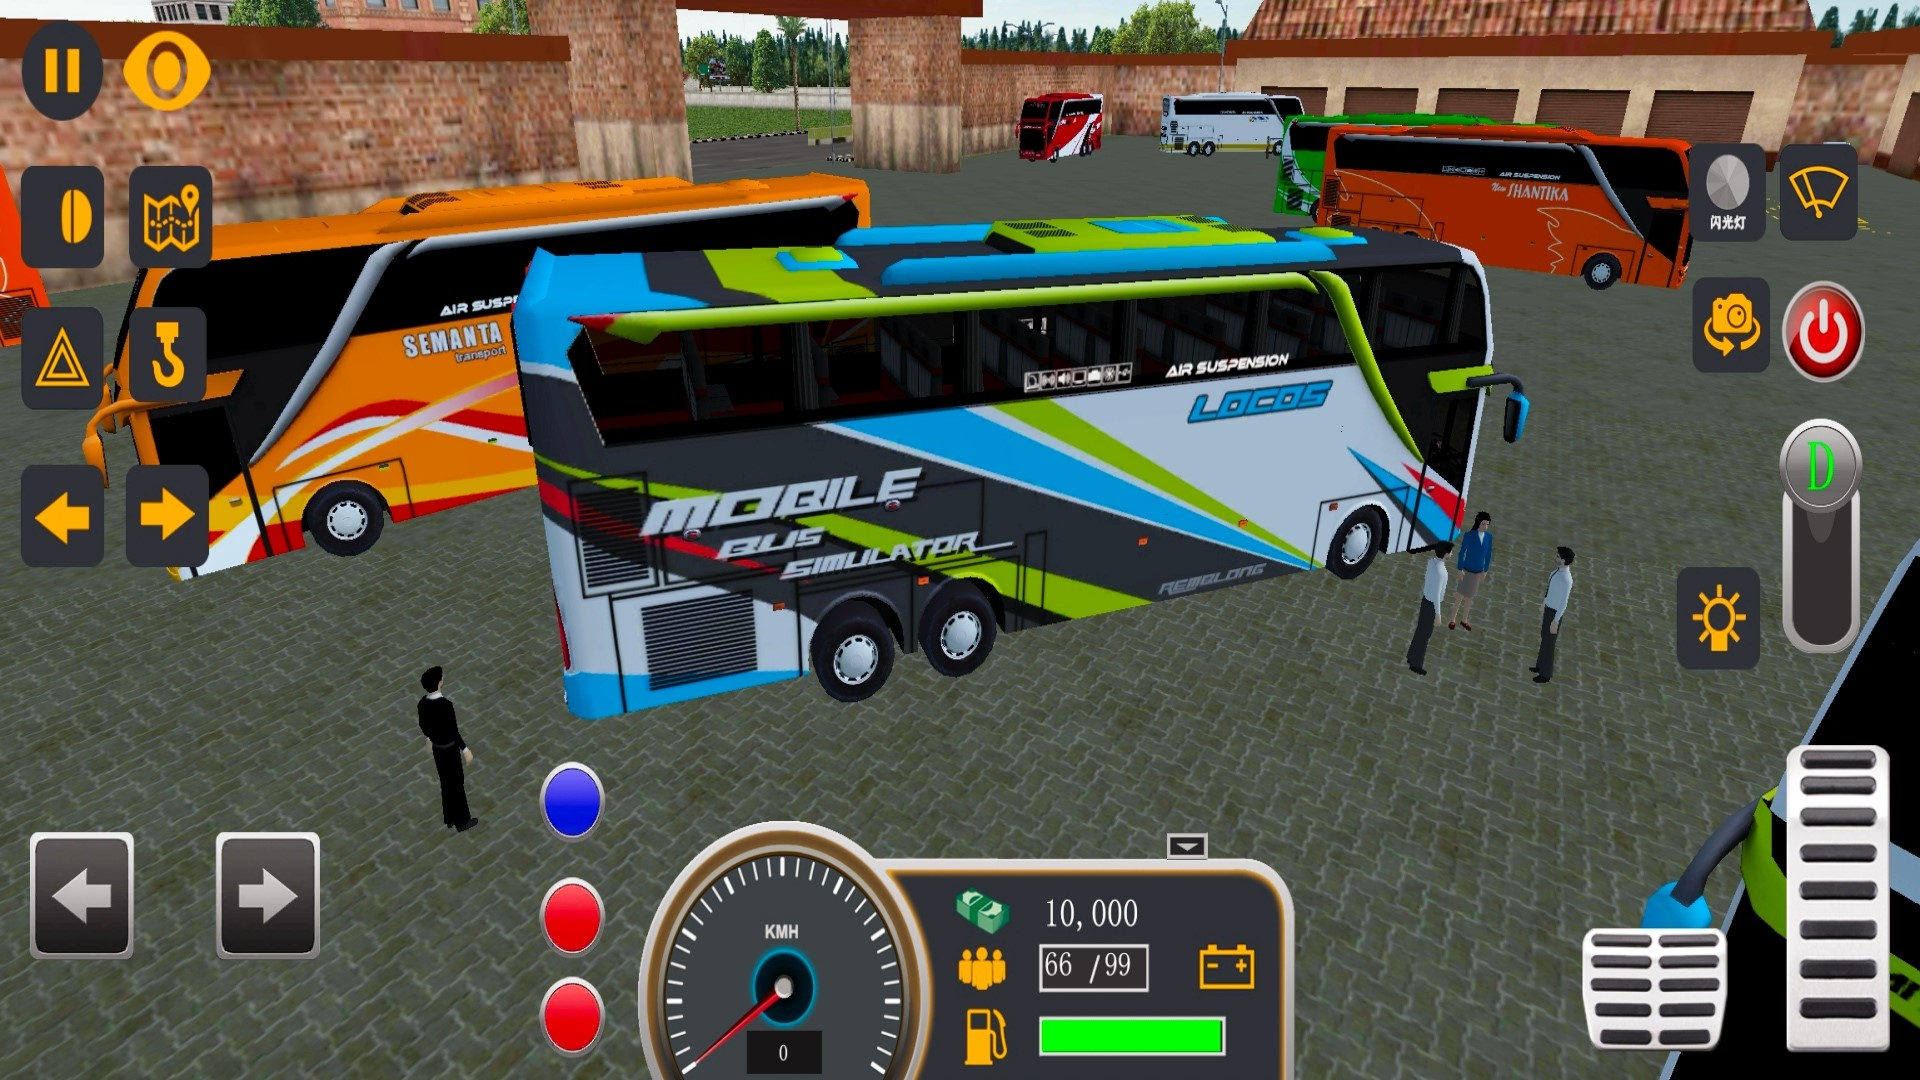 模拟公交大巴车